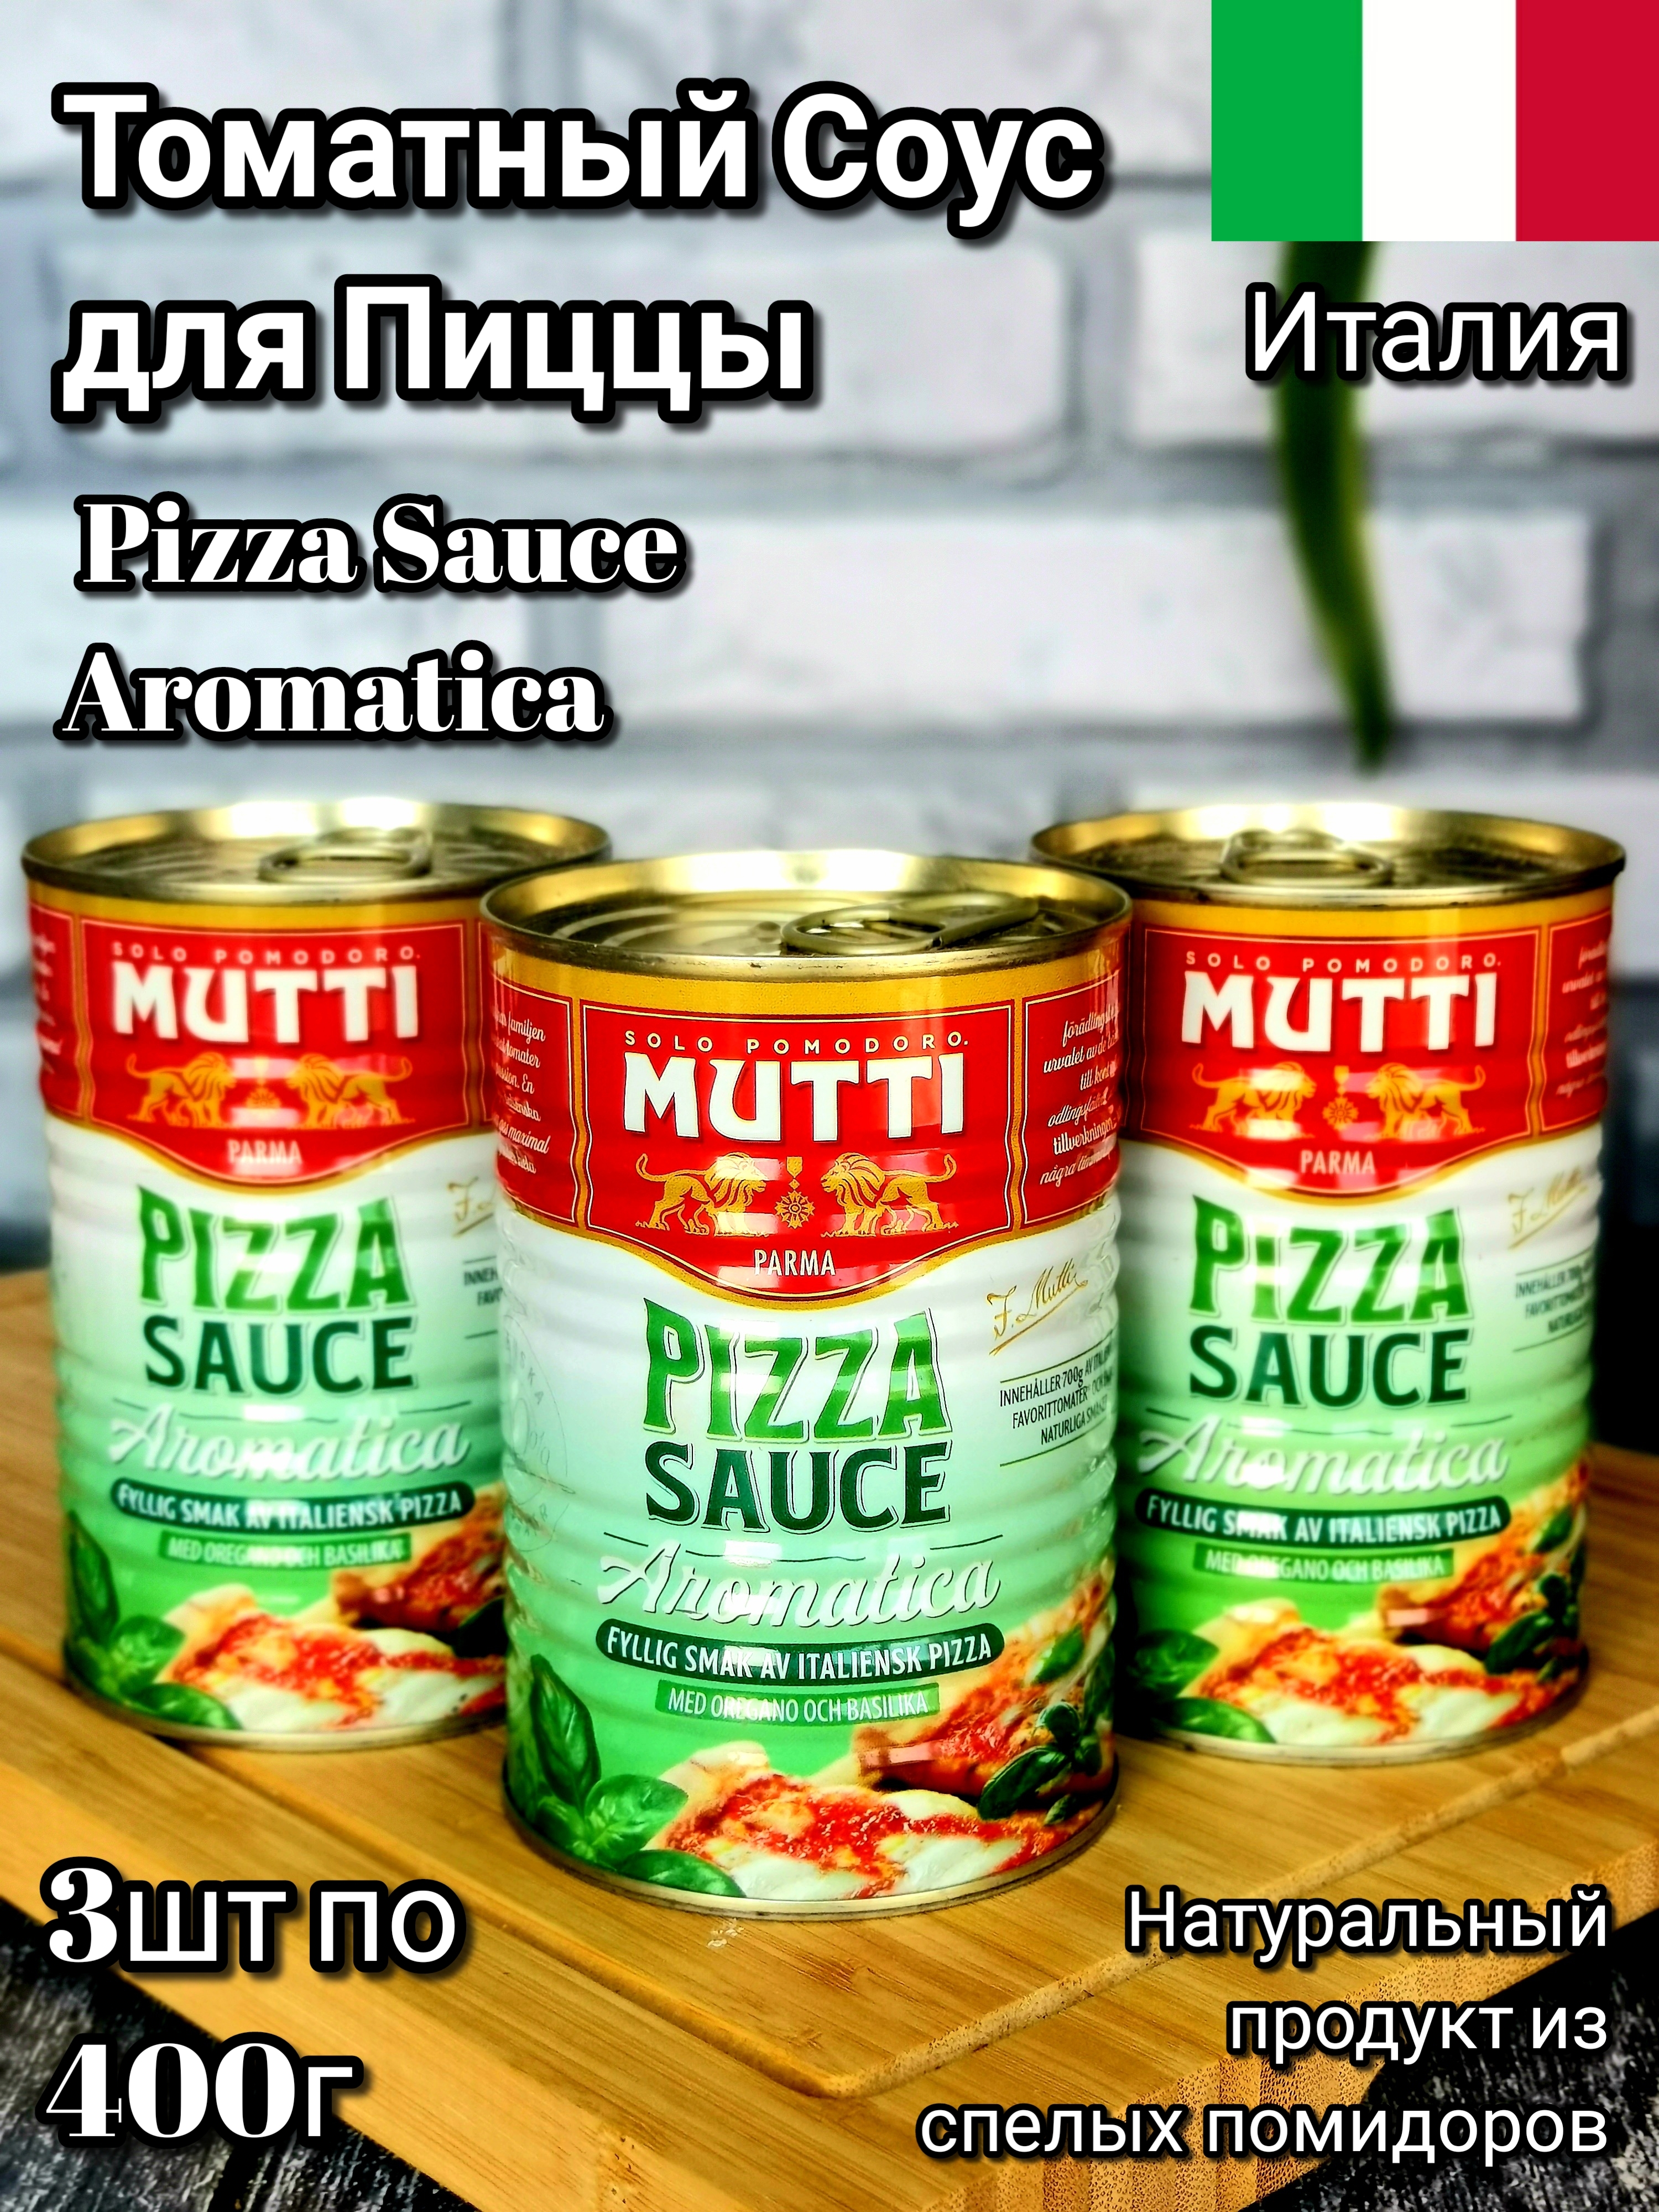 томатный соус мутти для пиццы фото 17